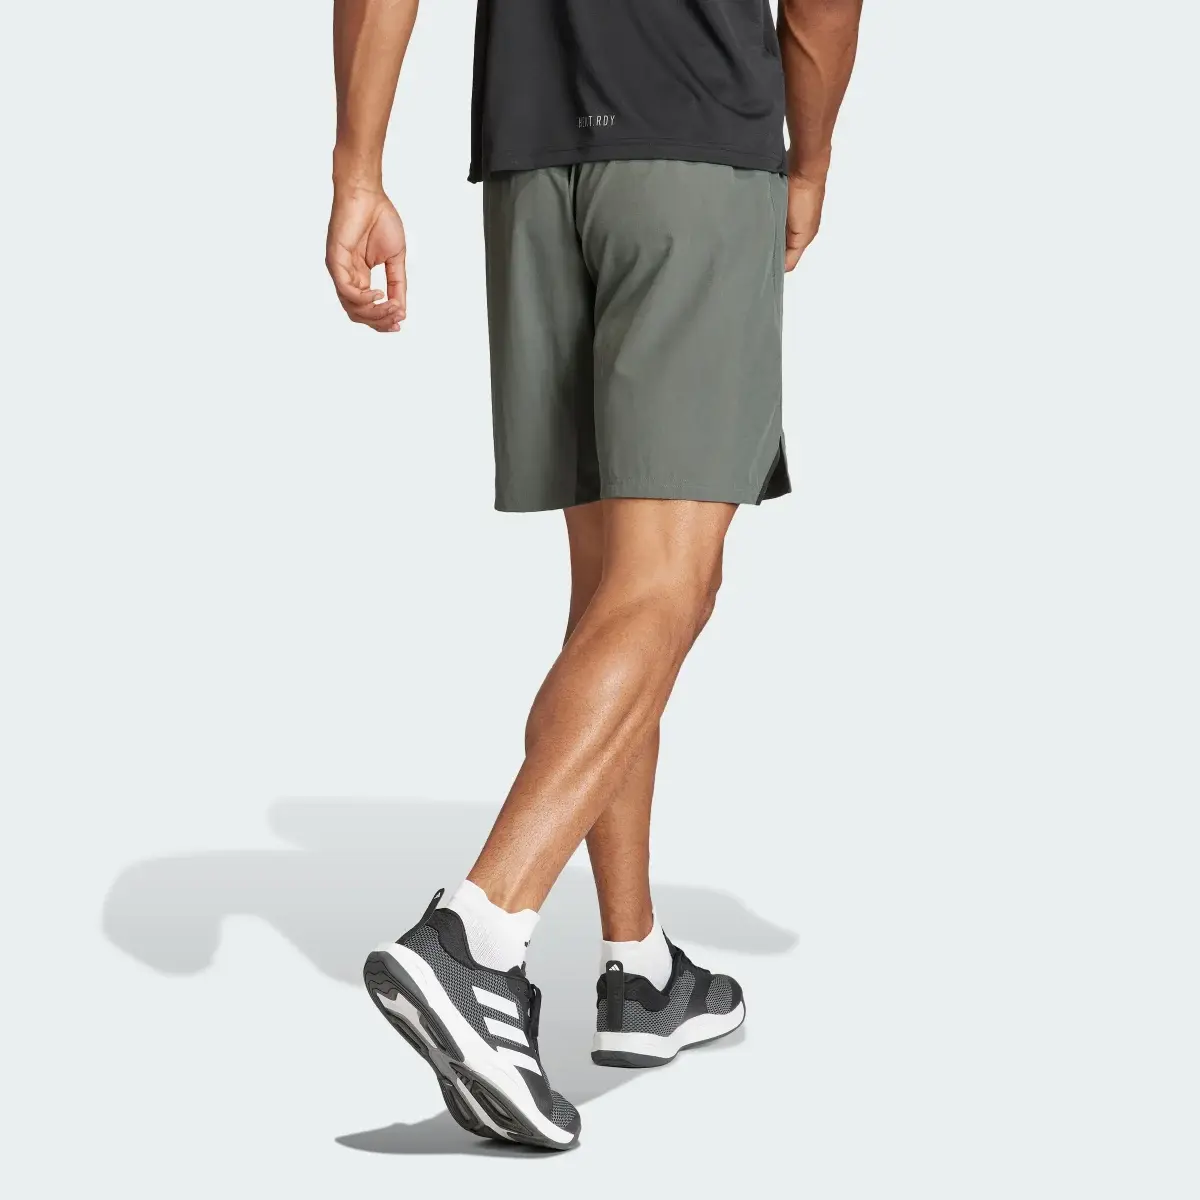 Adidas Designed for Training Workout Shorts. 2